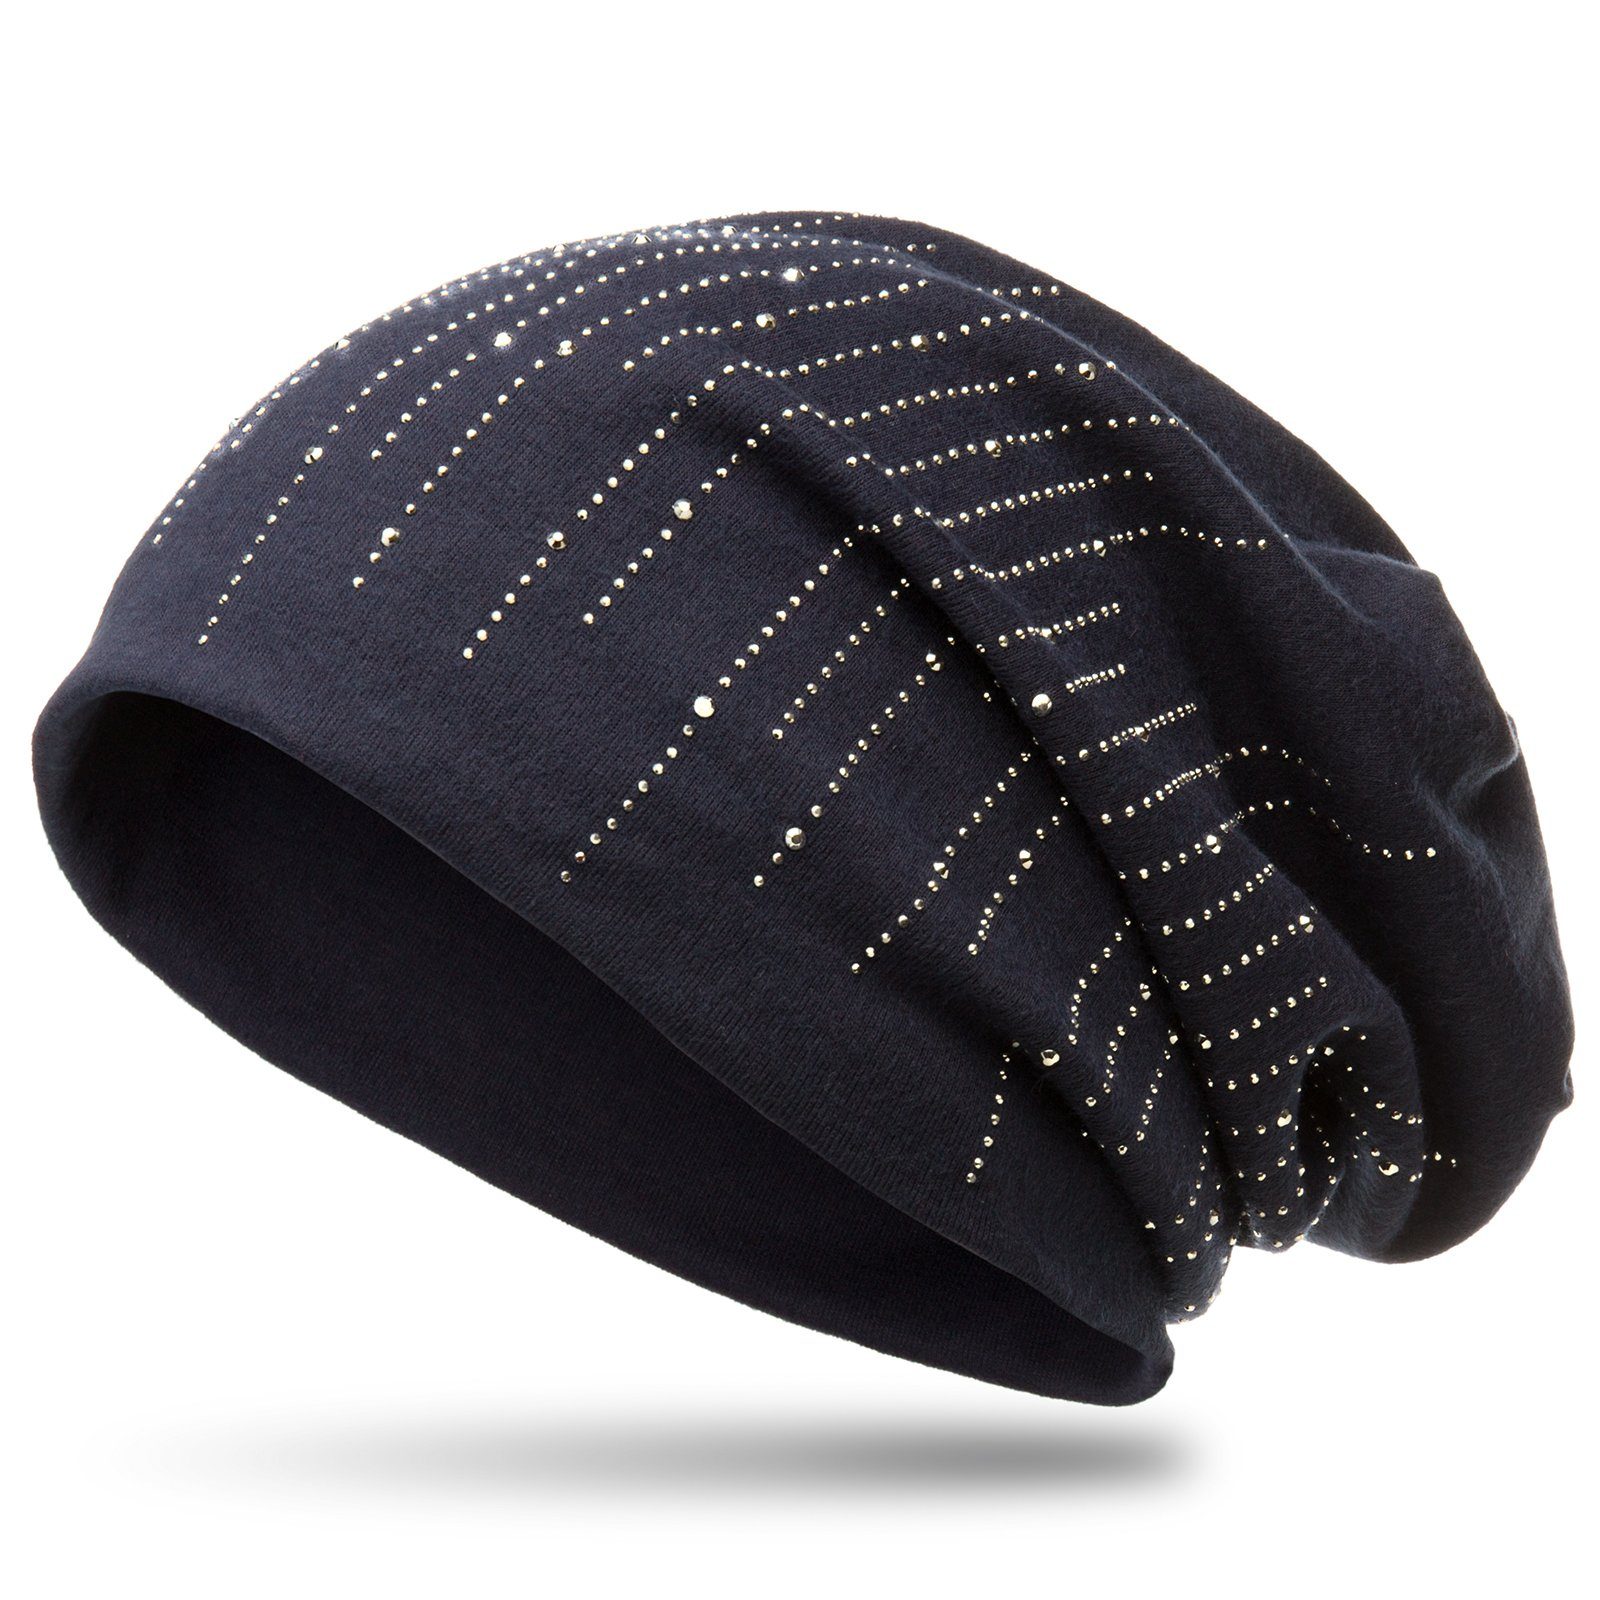 Caspar Beanie MU142 Beanie Mütze mit stylischen Strass Streifen und warmem Flanell Stoff dunkelblau